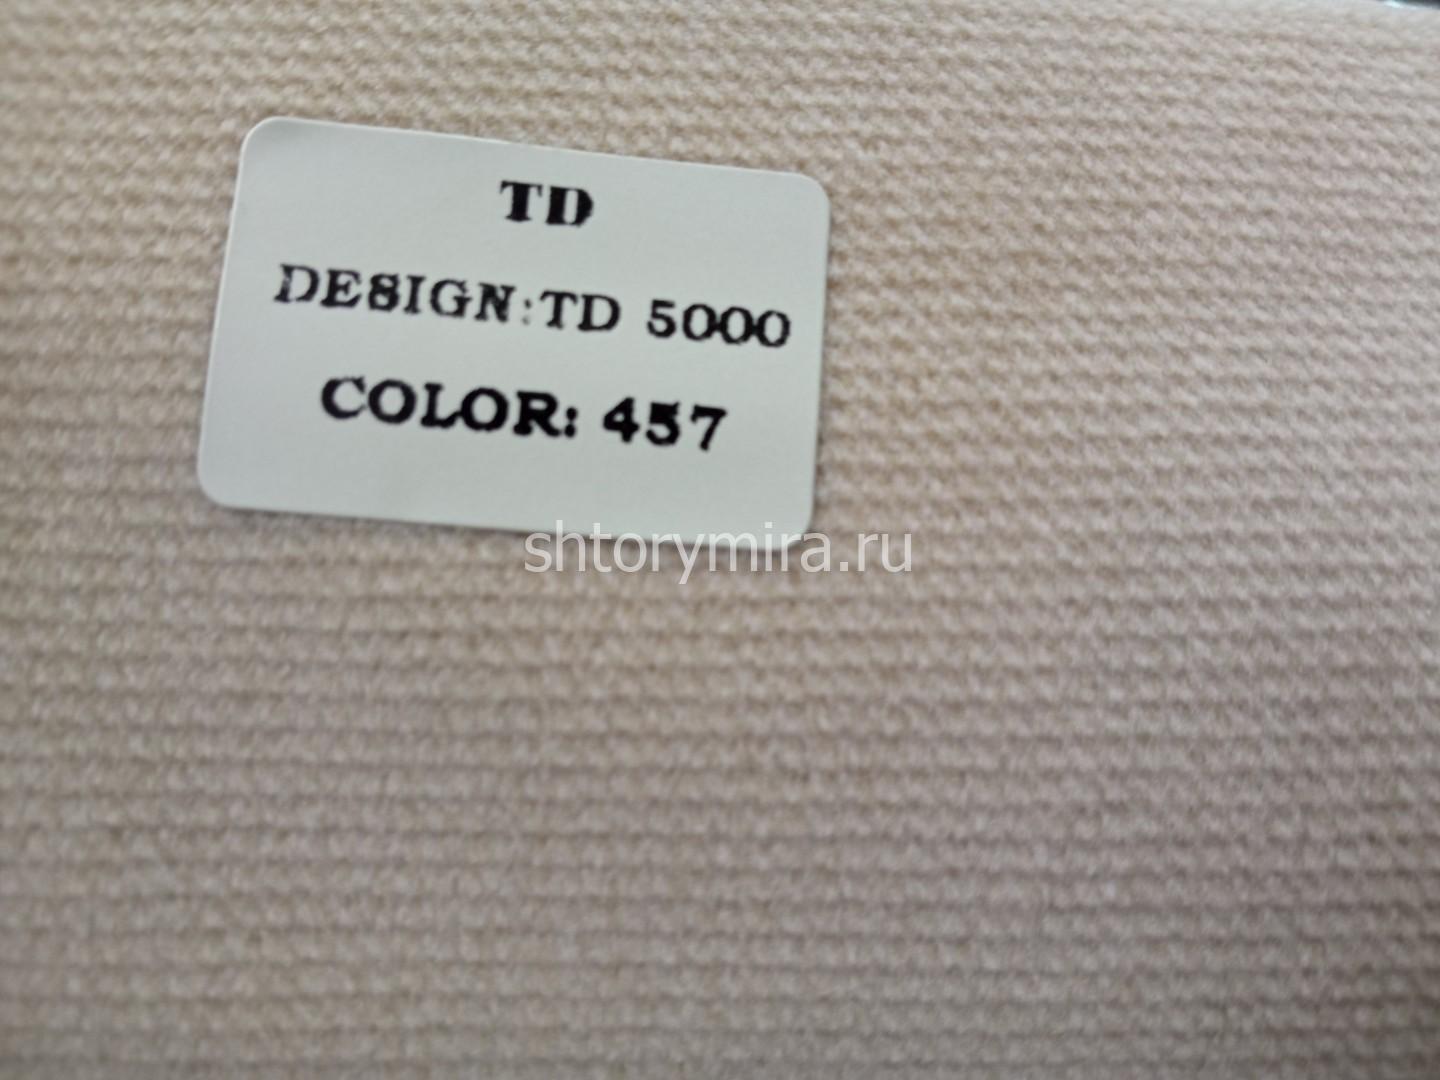 Ткань TD 5000-457 Rof